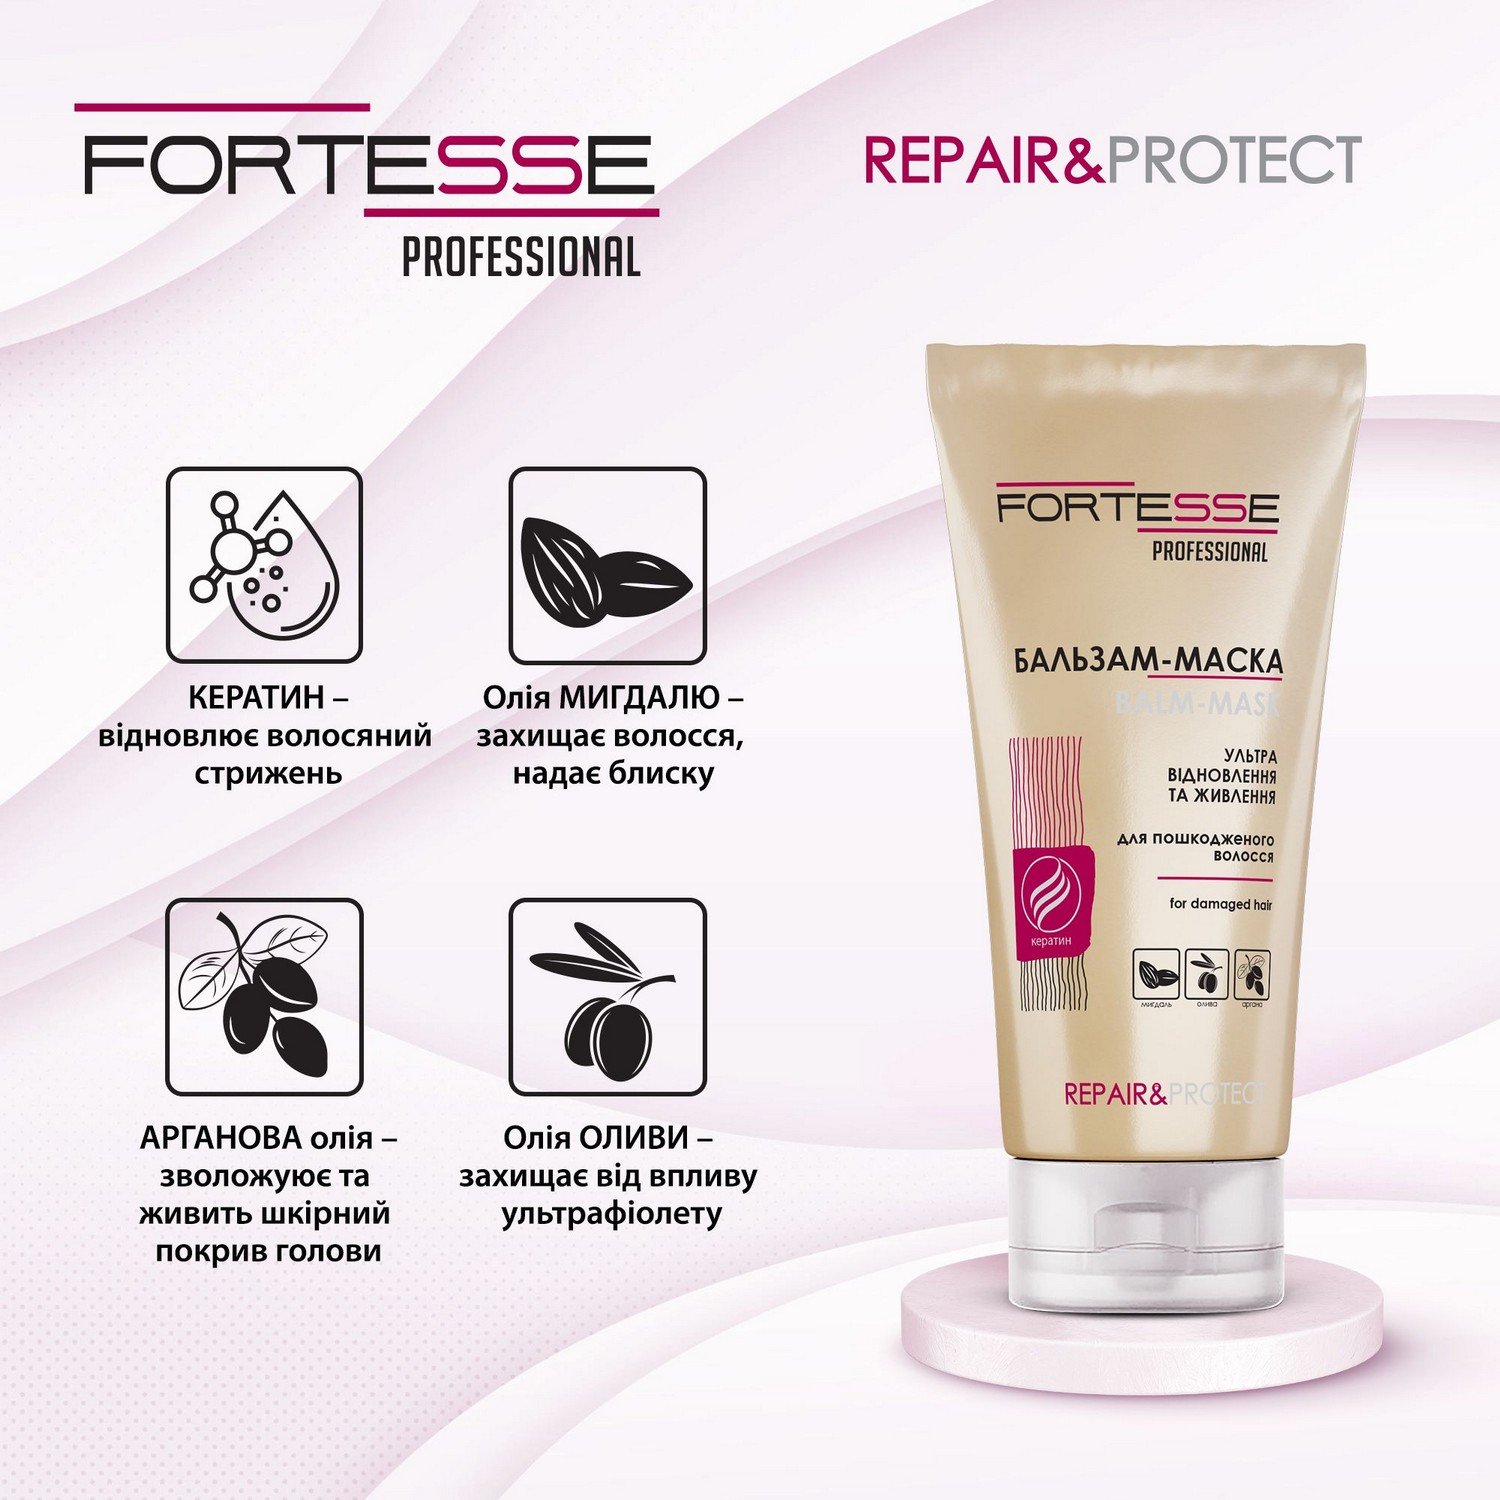 Восстанавливающая бальзам-маска Fortesse Professional Repair&Protect для сухих, поврежденных волос, нуждающихся в питании, 200 мл - фото 3